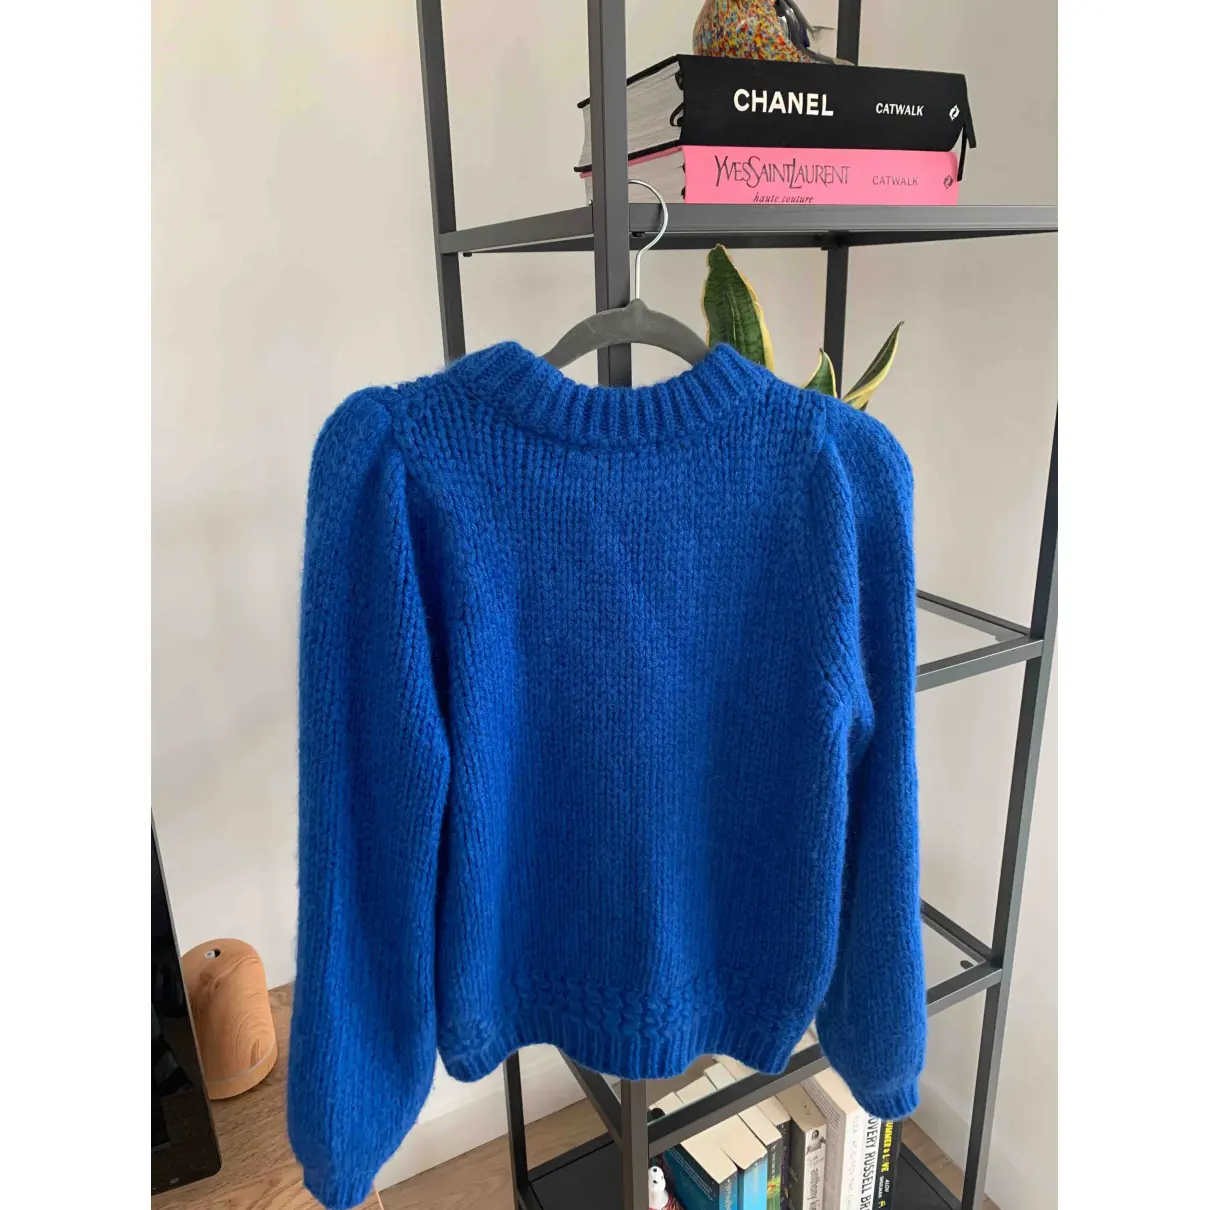 Buy Sézane Fall Winter 2019 wool jumper online